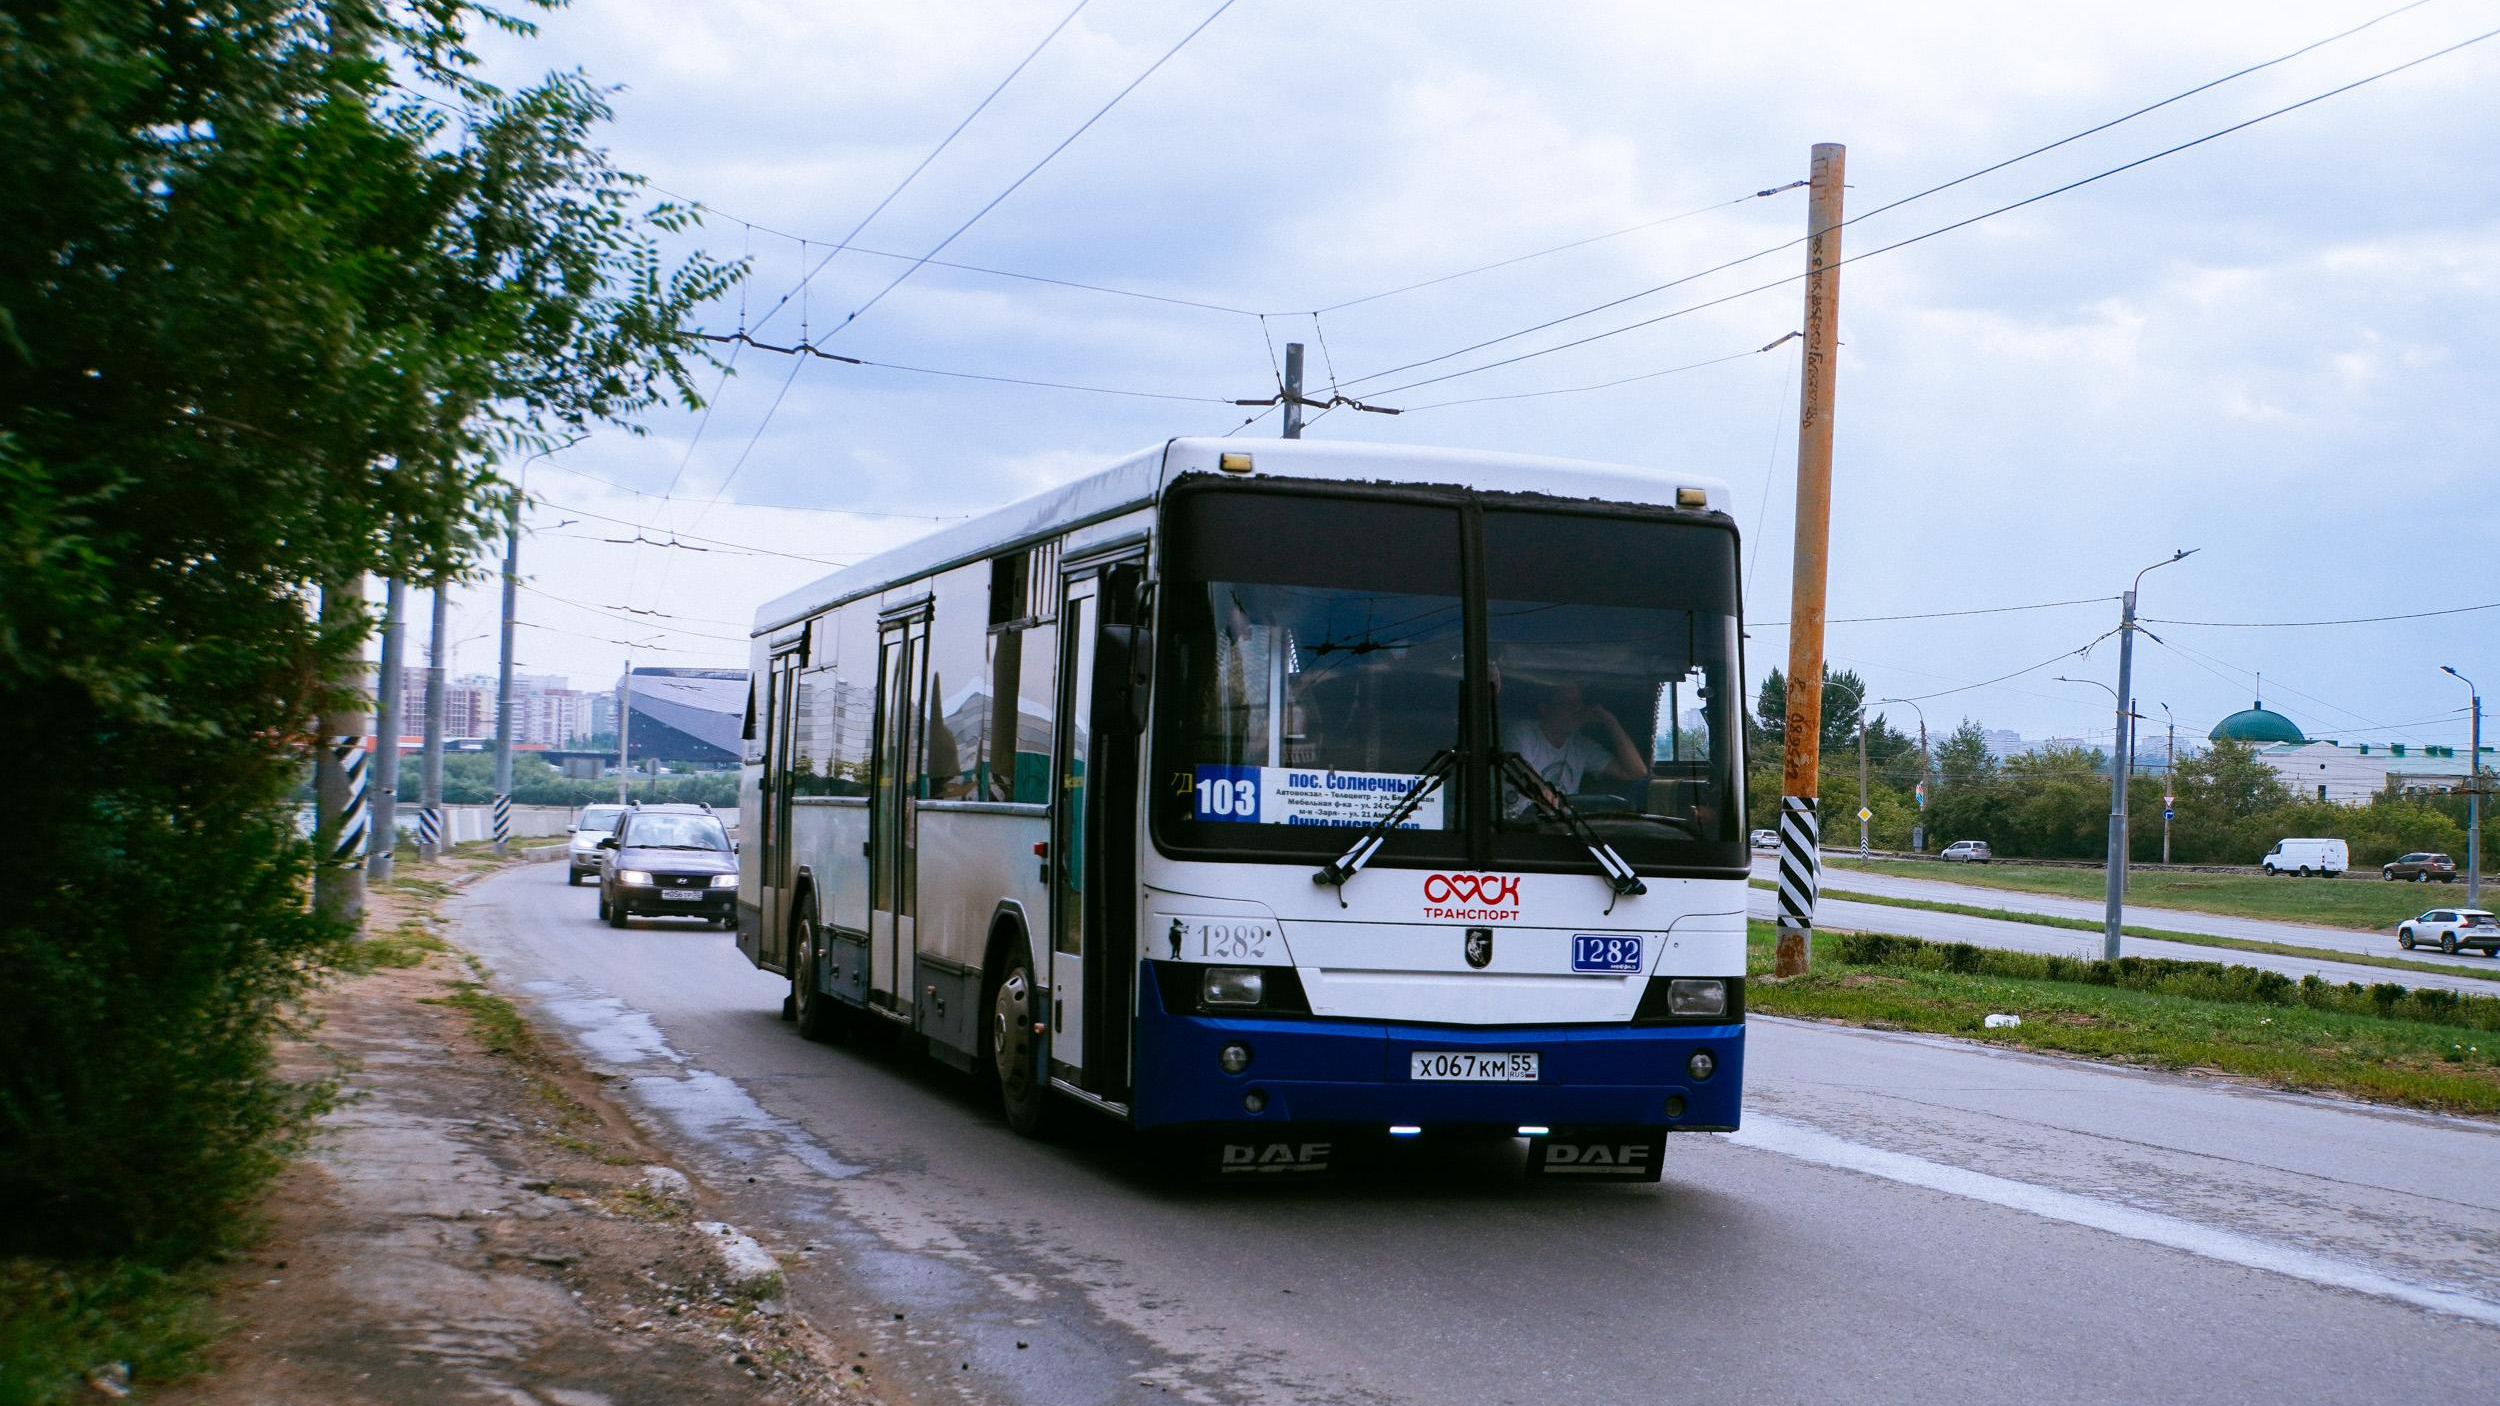 Автобусов больше не будет? Власти прокомментировали слухи о закрытии нескольких маршрутов в Барнауле